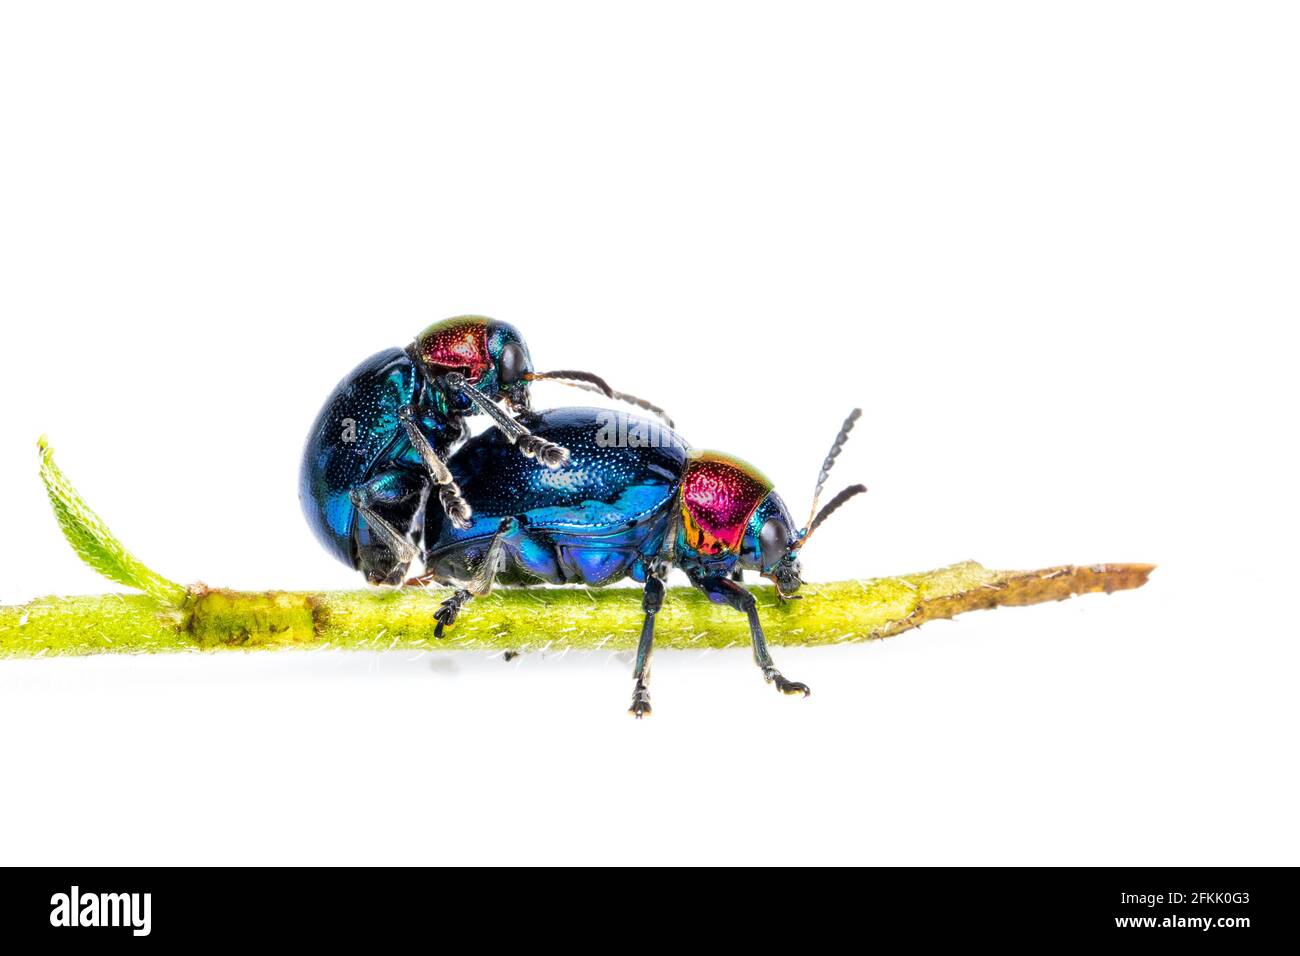 Imagen del escarabajo azul de la maleza tiene alas azules y una pareja roja de la cabeza hace el amor sobre fondo blanco. Insecto. Animal. Foto de stock